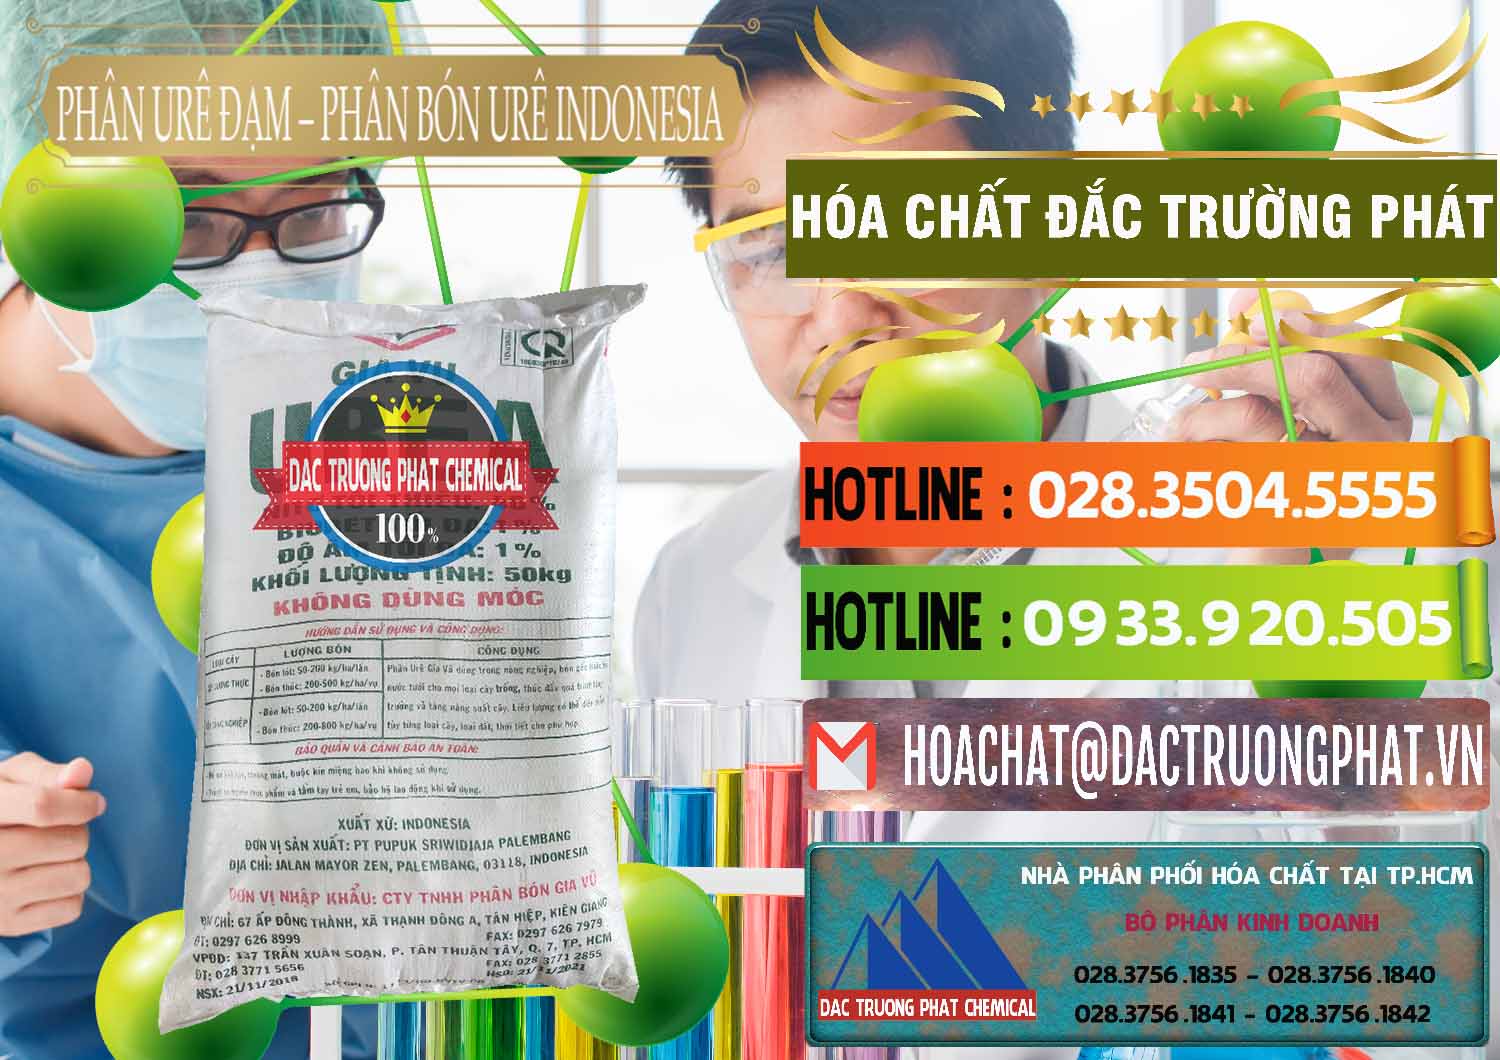 Đơn vị nhập khẩu _ bán Phân Urê Đạm – Phân Bón Urê Indonesia - 0194 - Công ty chuyên nhập khẩu và phân phối hóa chất tại TP.HCM - cungcaphoachat.com.vn